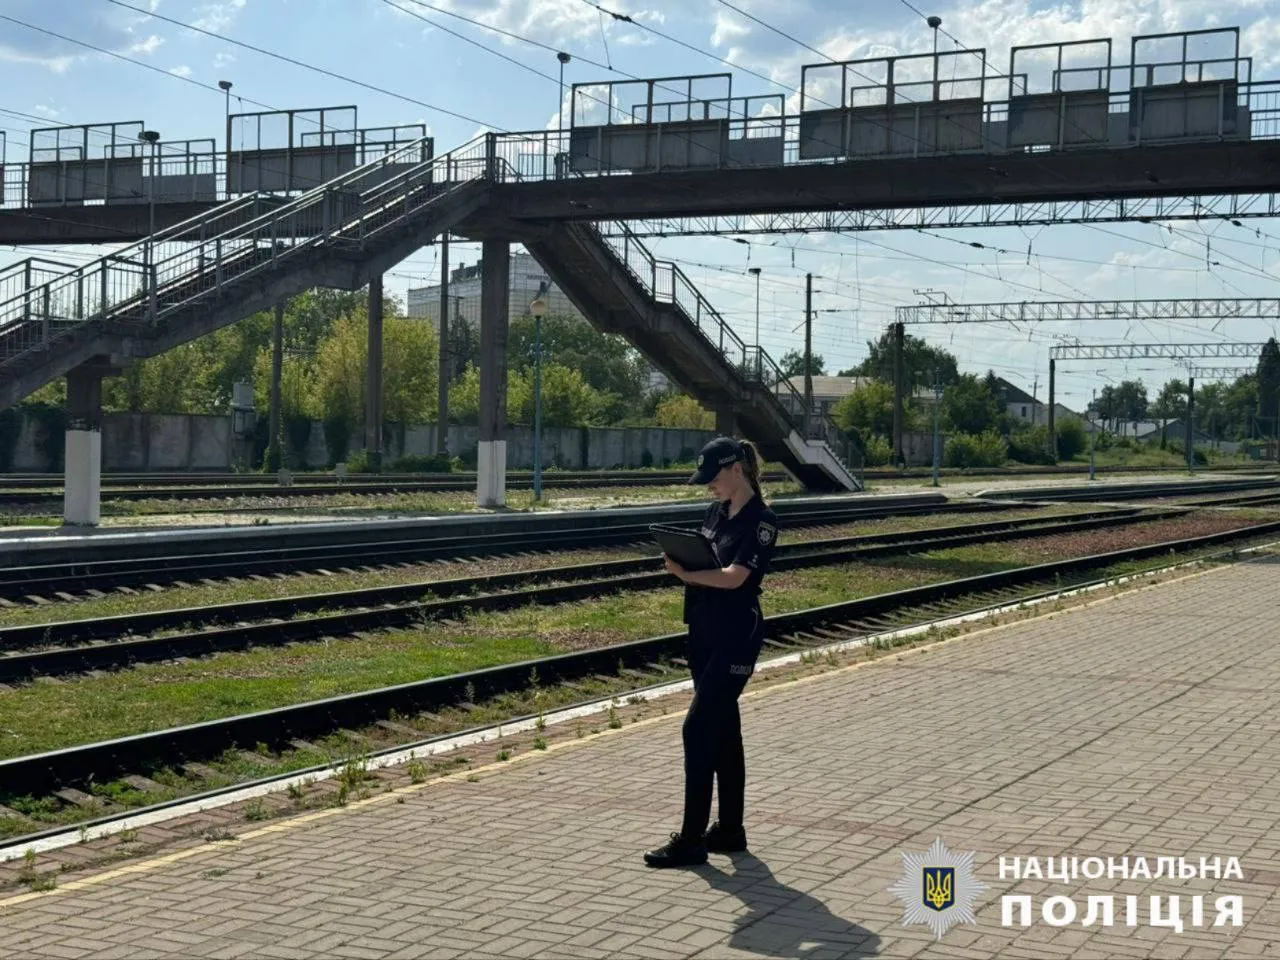 В Киевской области пенсионерка сбросила собаку с железнодорожного моста. Подробности дела